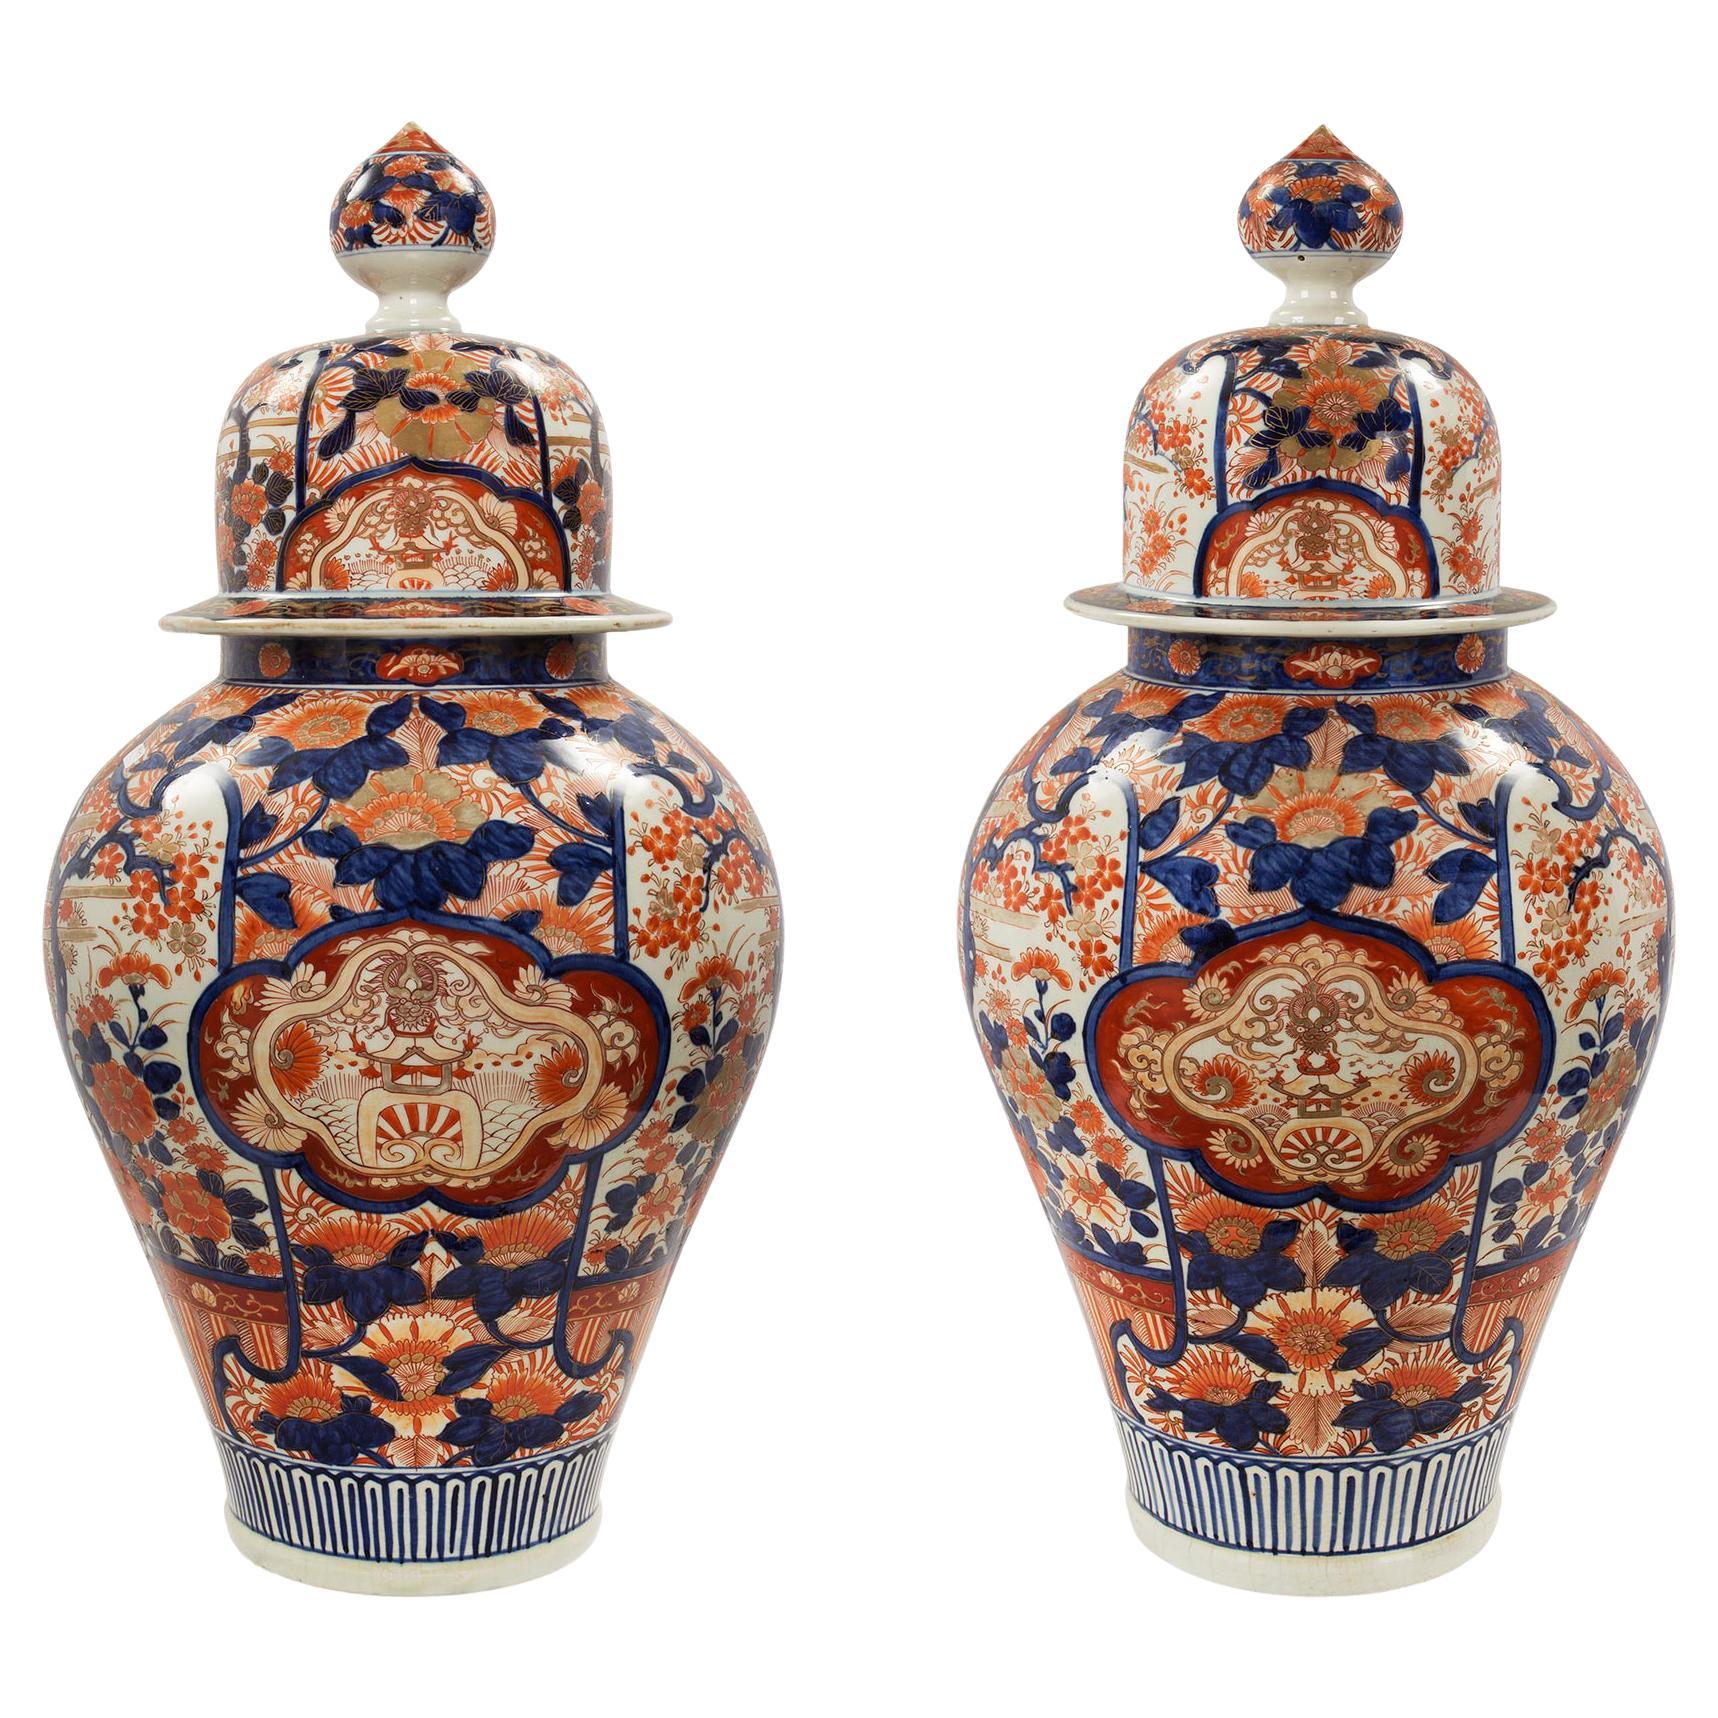 Paire d'urnes à couvercle Imari japonaises du 19ème siècle